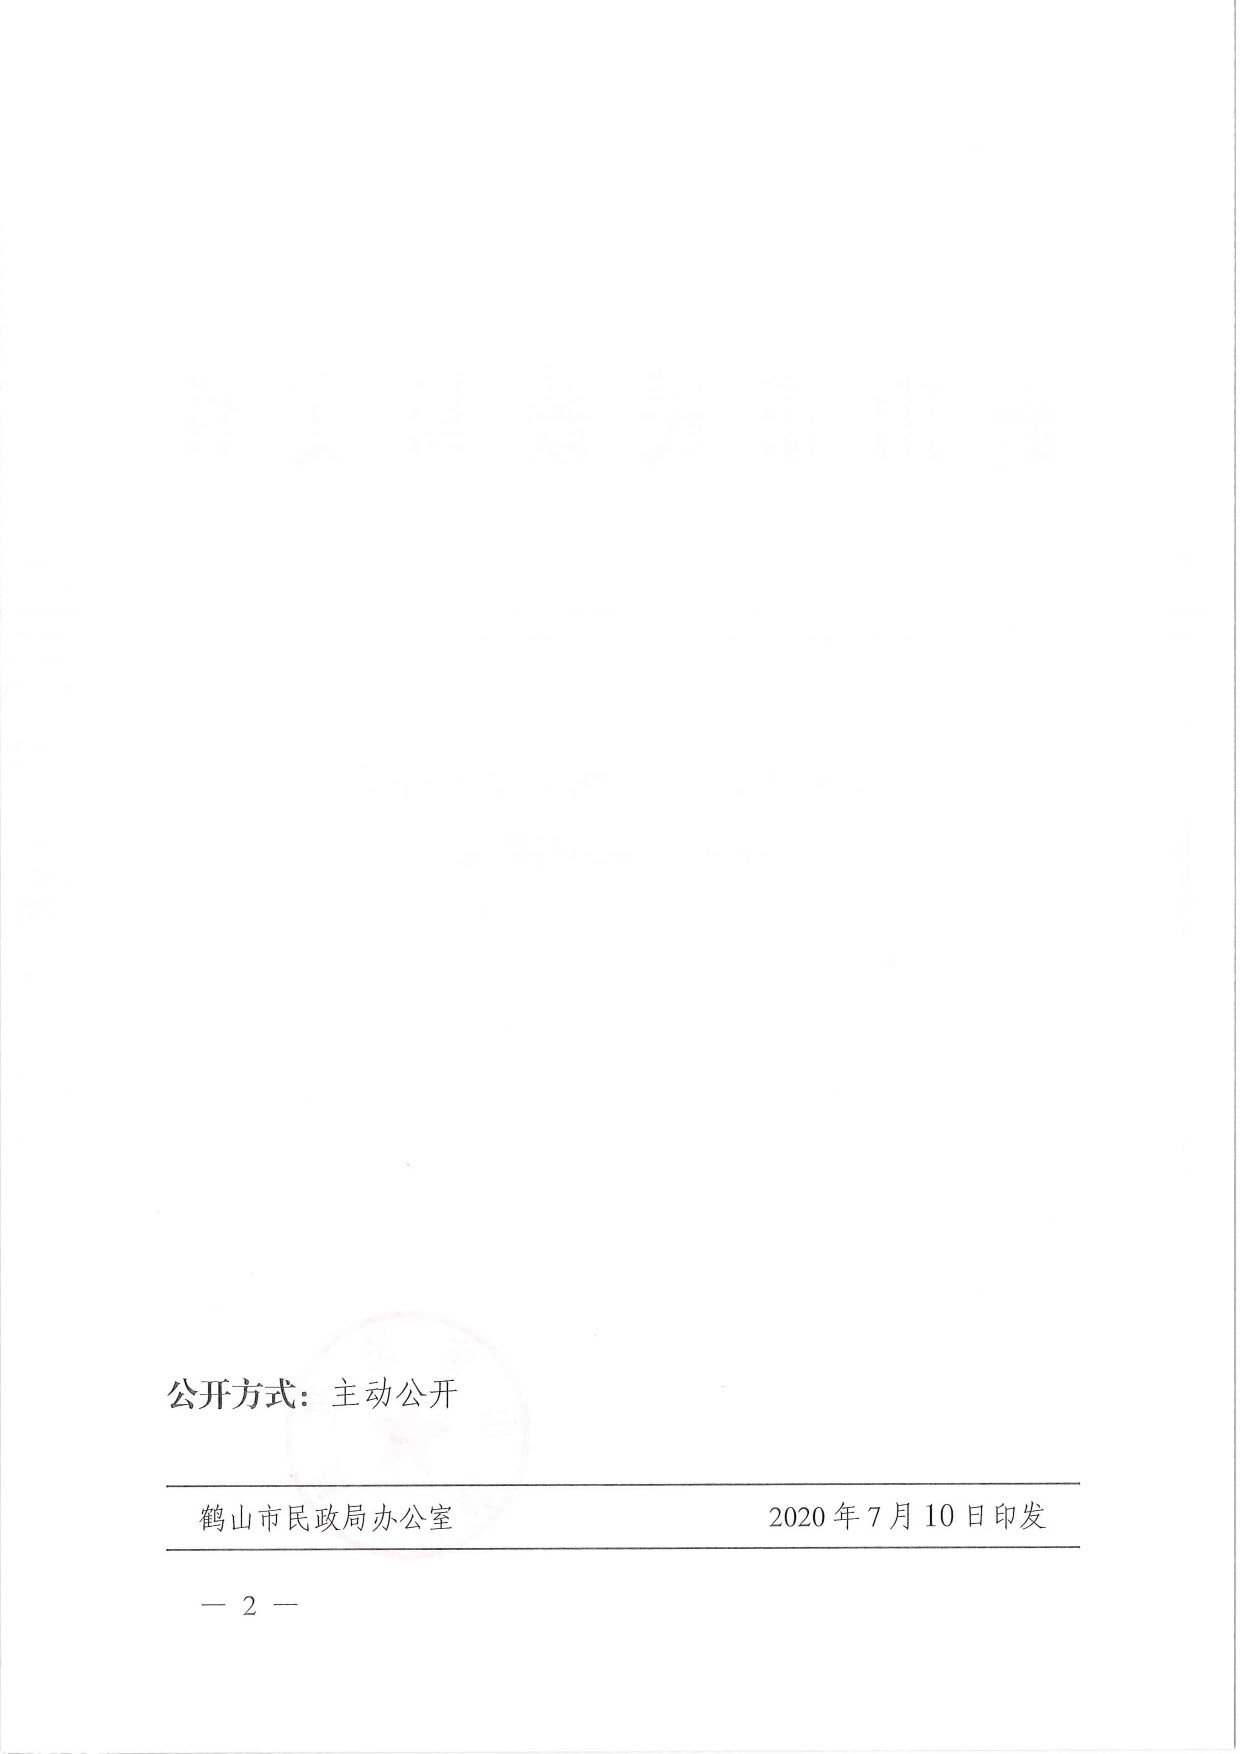 鹤民社〔2020〕38号关于准予鹤山市鹤城镇足球协会注销登记的批复-2.jpg